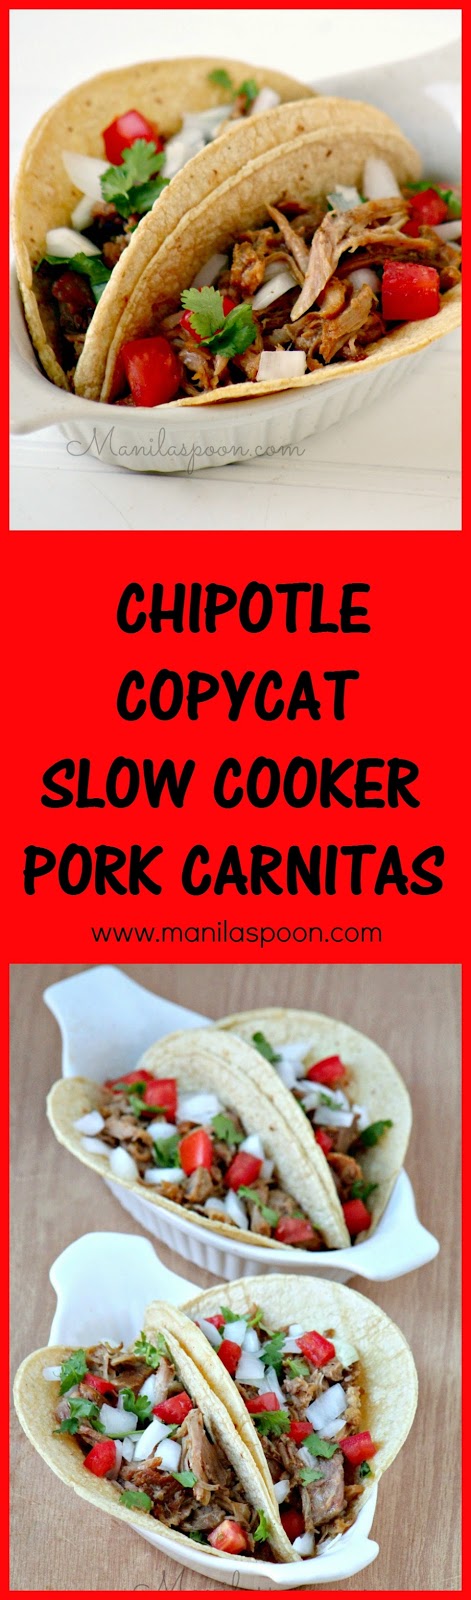 Chipotle Copycat Slow Cooker Pork Carnitas - Manila Spoon